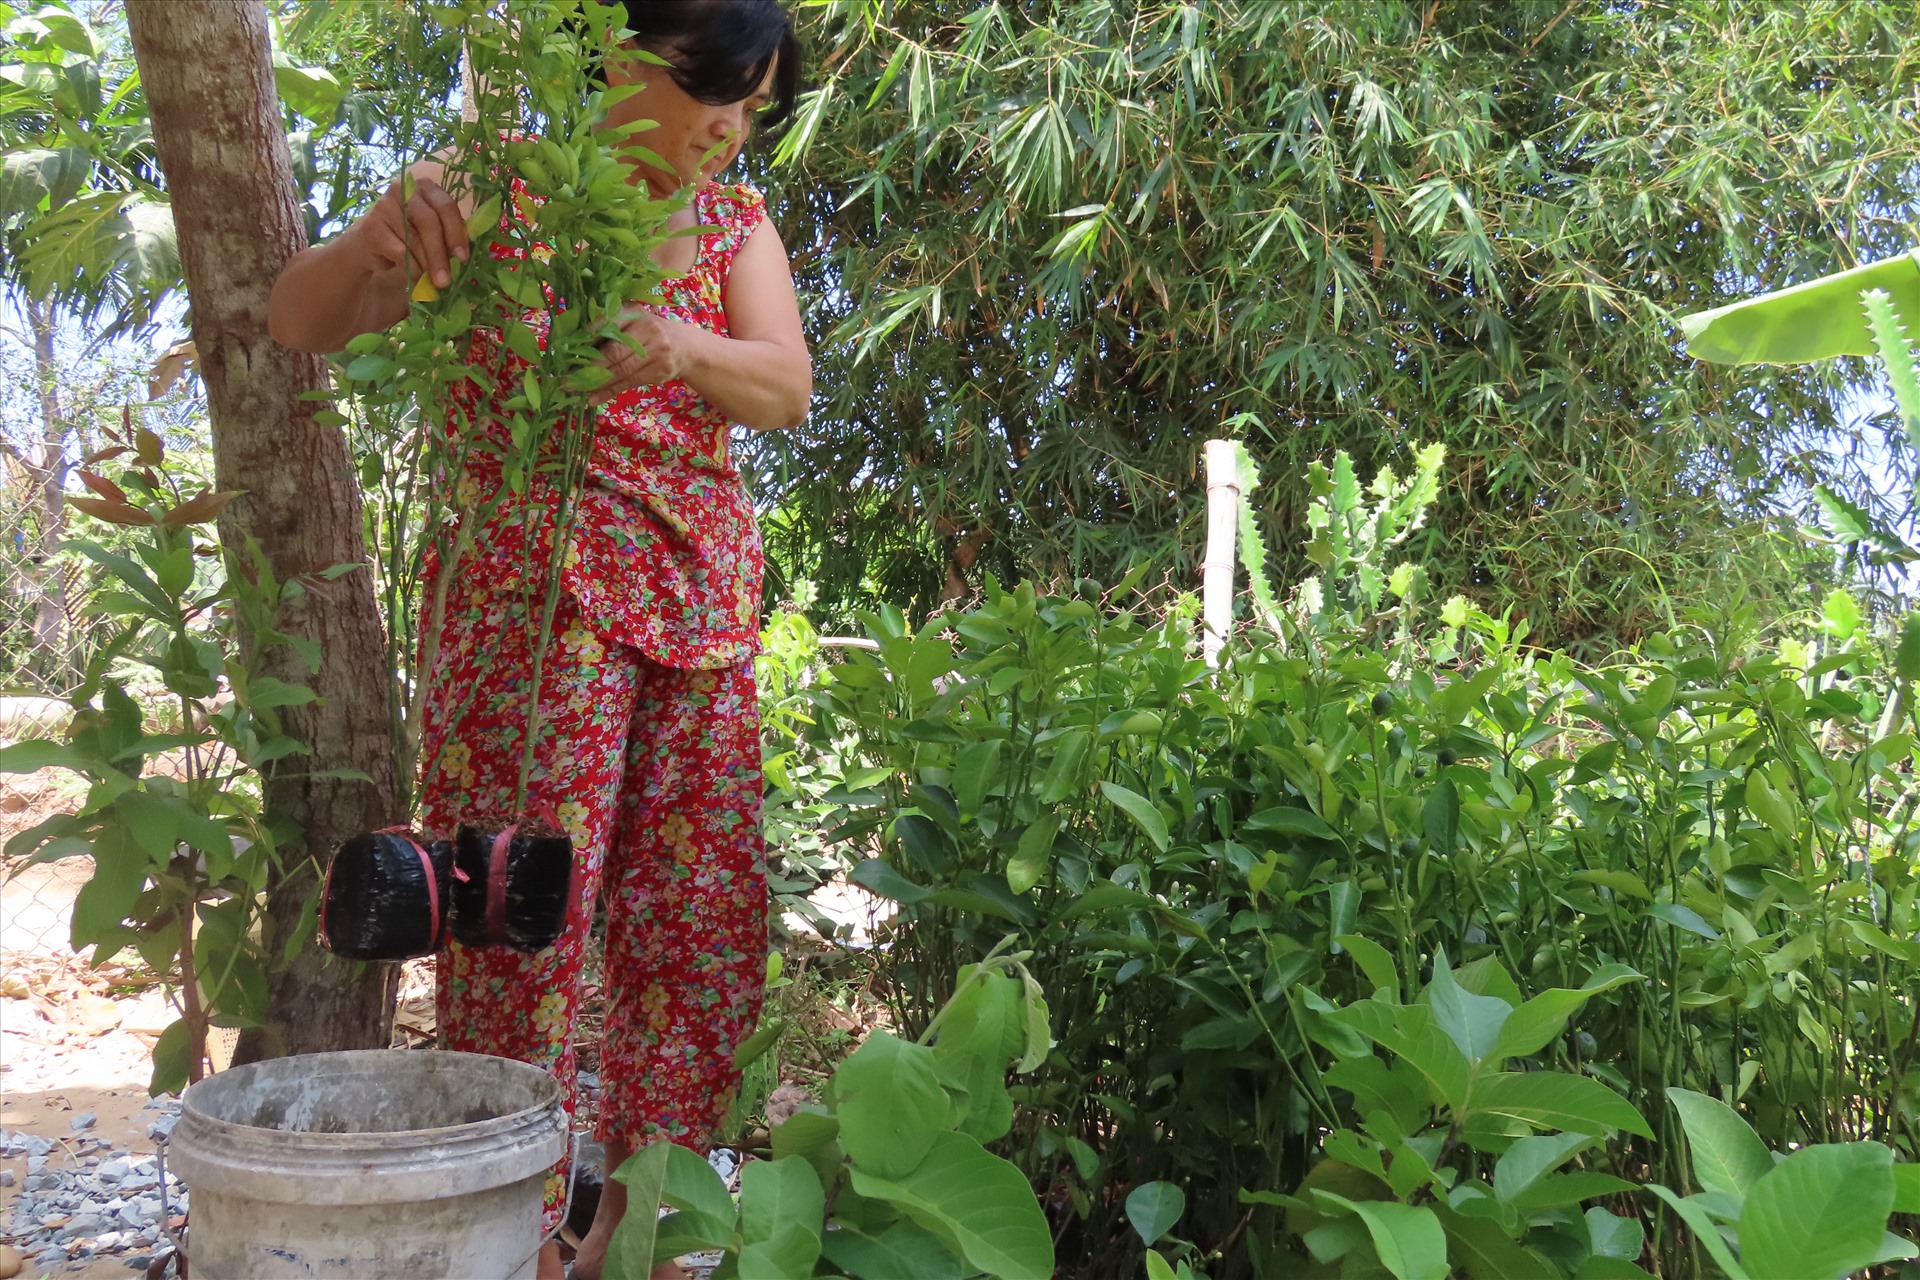 Nhà trồng cây giống, để tiết kiệm nước trong thời điểm khan hiếm này, bà Mai không dám tưới cây như thường ngày mà phải dùng thùng chứa nước rồi nhúng từng cây vào để tiết kiệm.